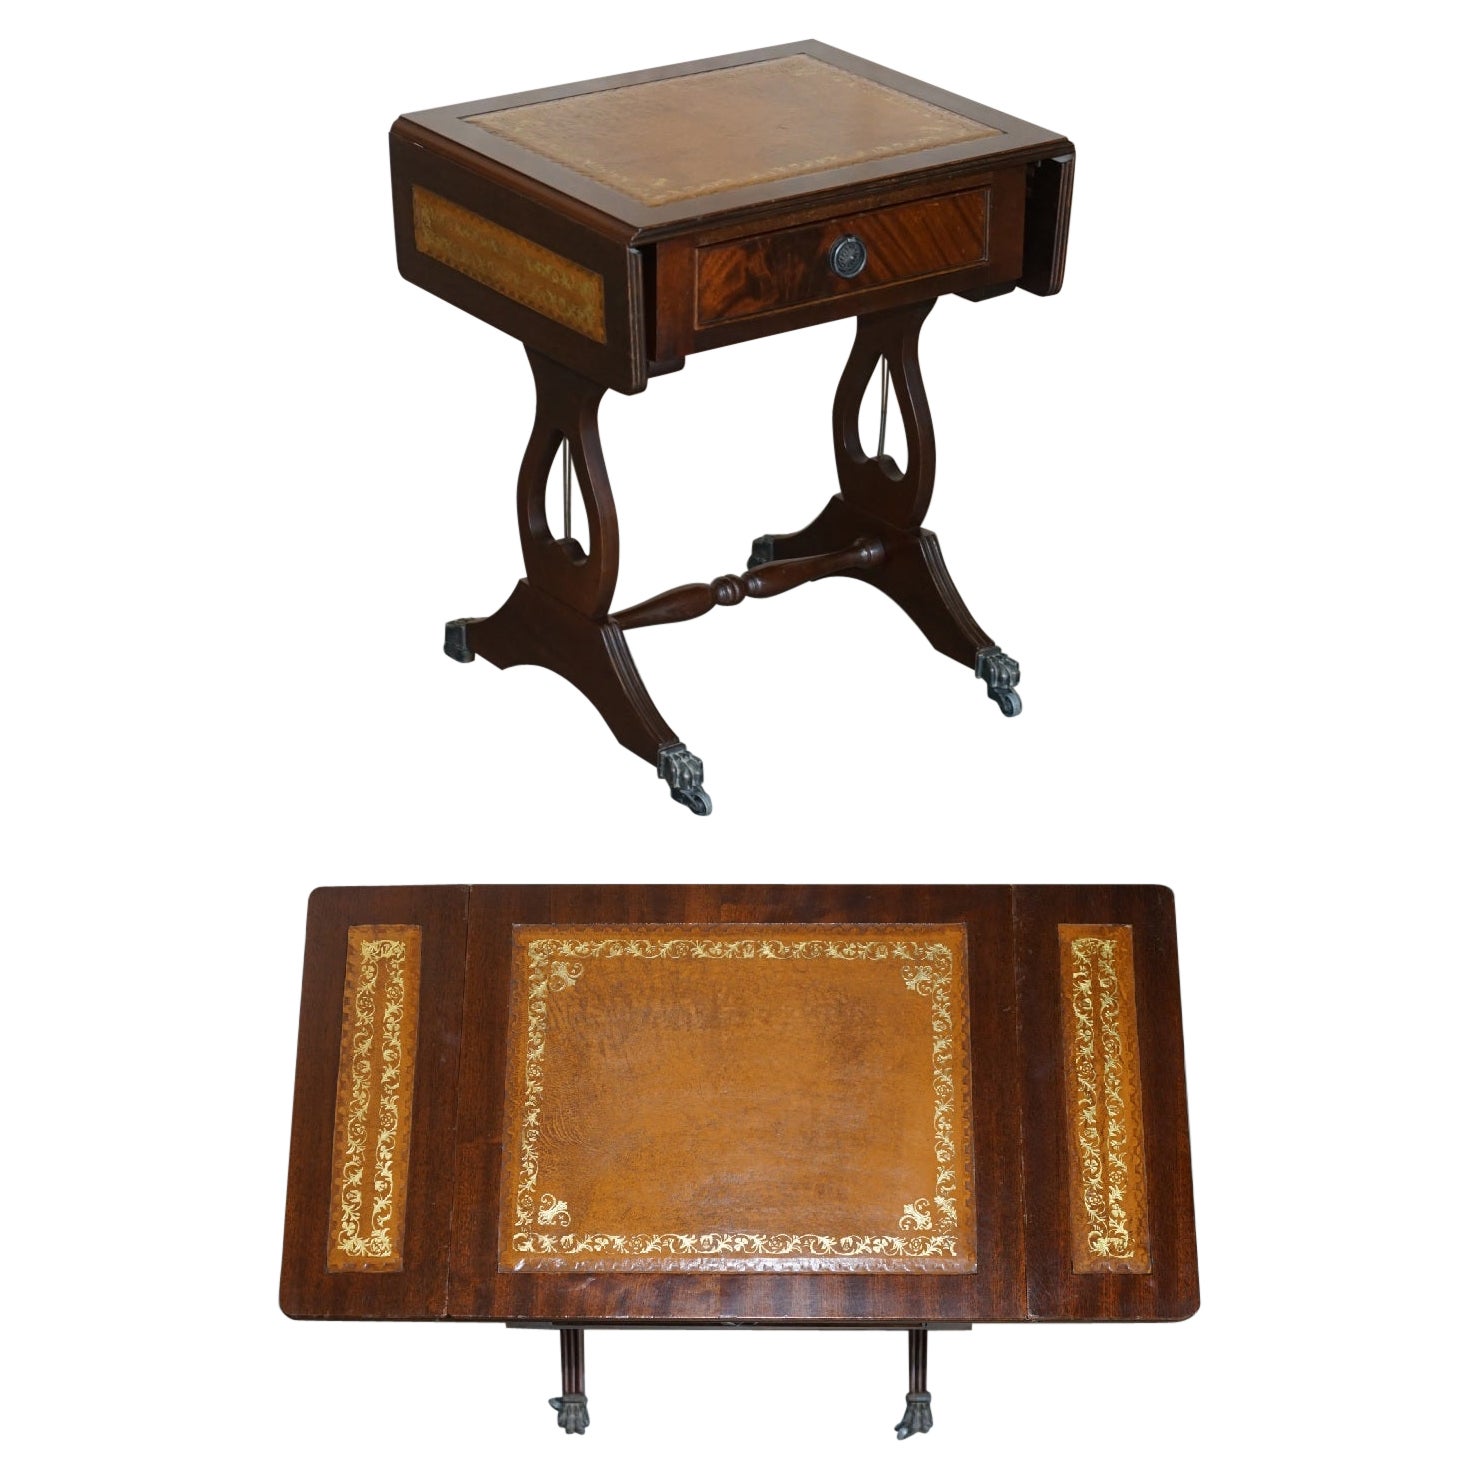 Table d'extrémité d'appoint vintage en cuir marron et feuille d'or avec plateau extensible Great Games Table